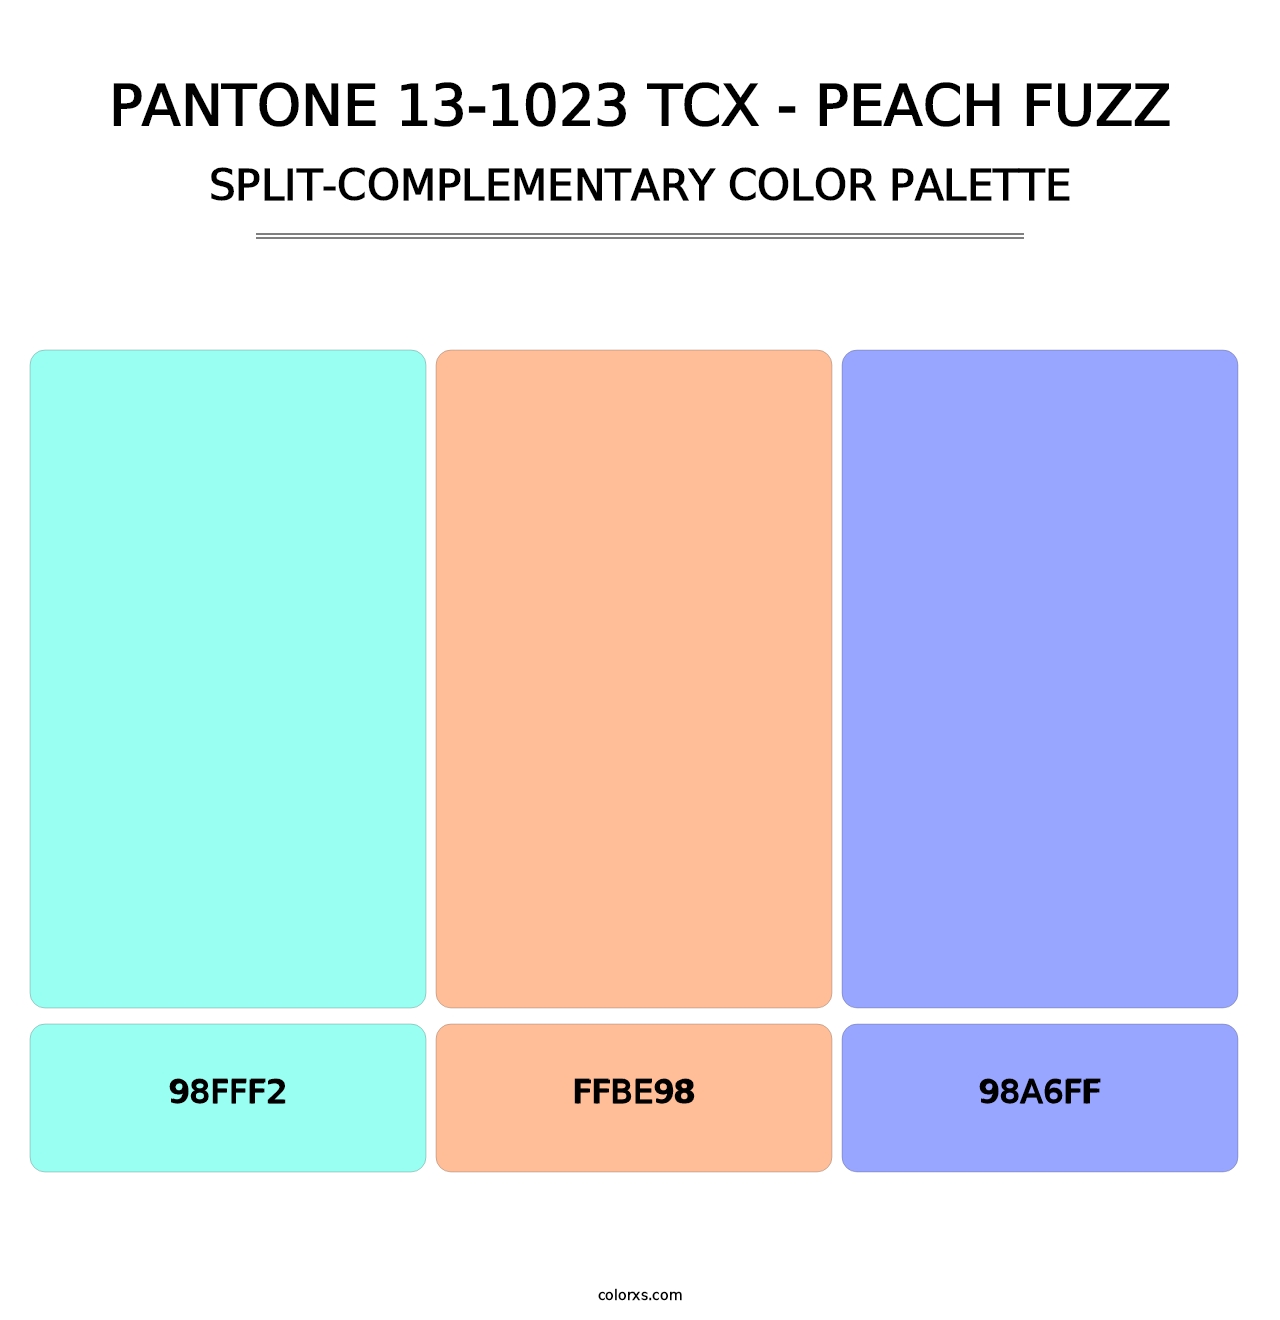 PANTONE 13-1023 TCX - Peach Fuzz - Split-Complementary Color Palette